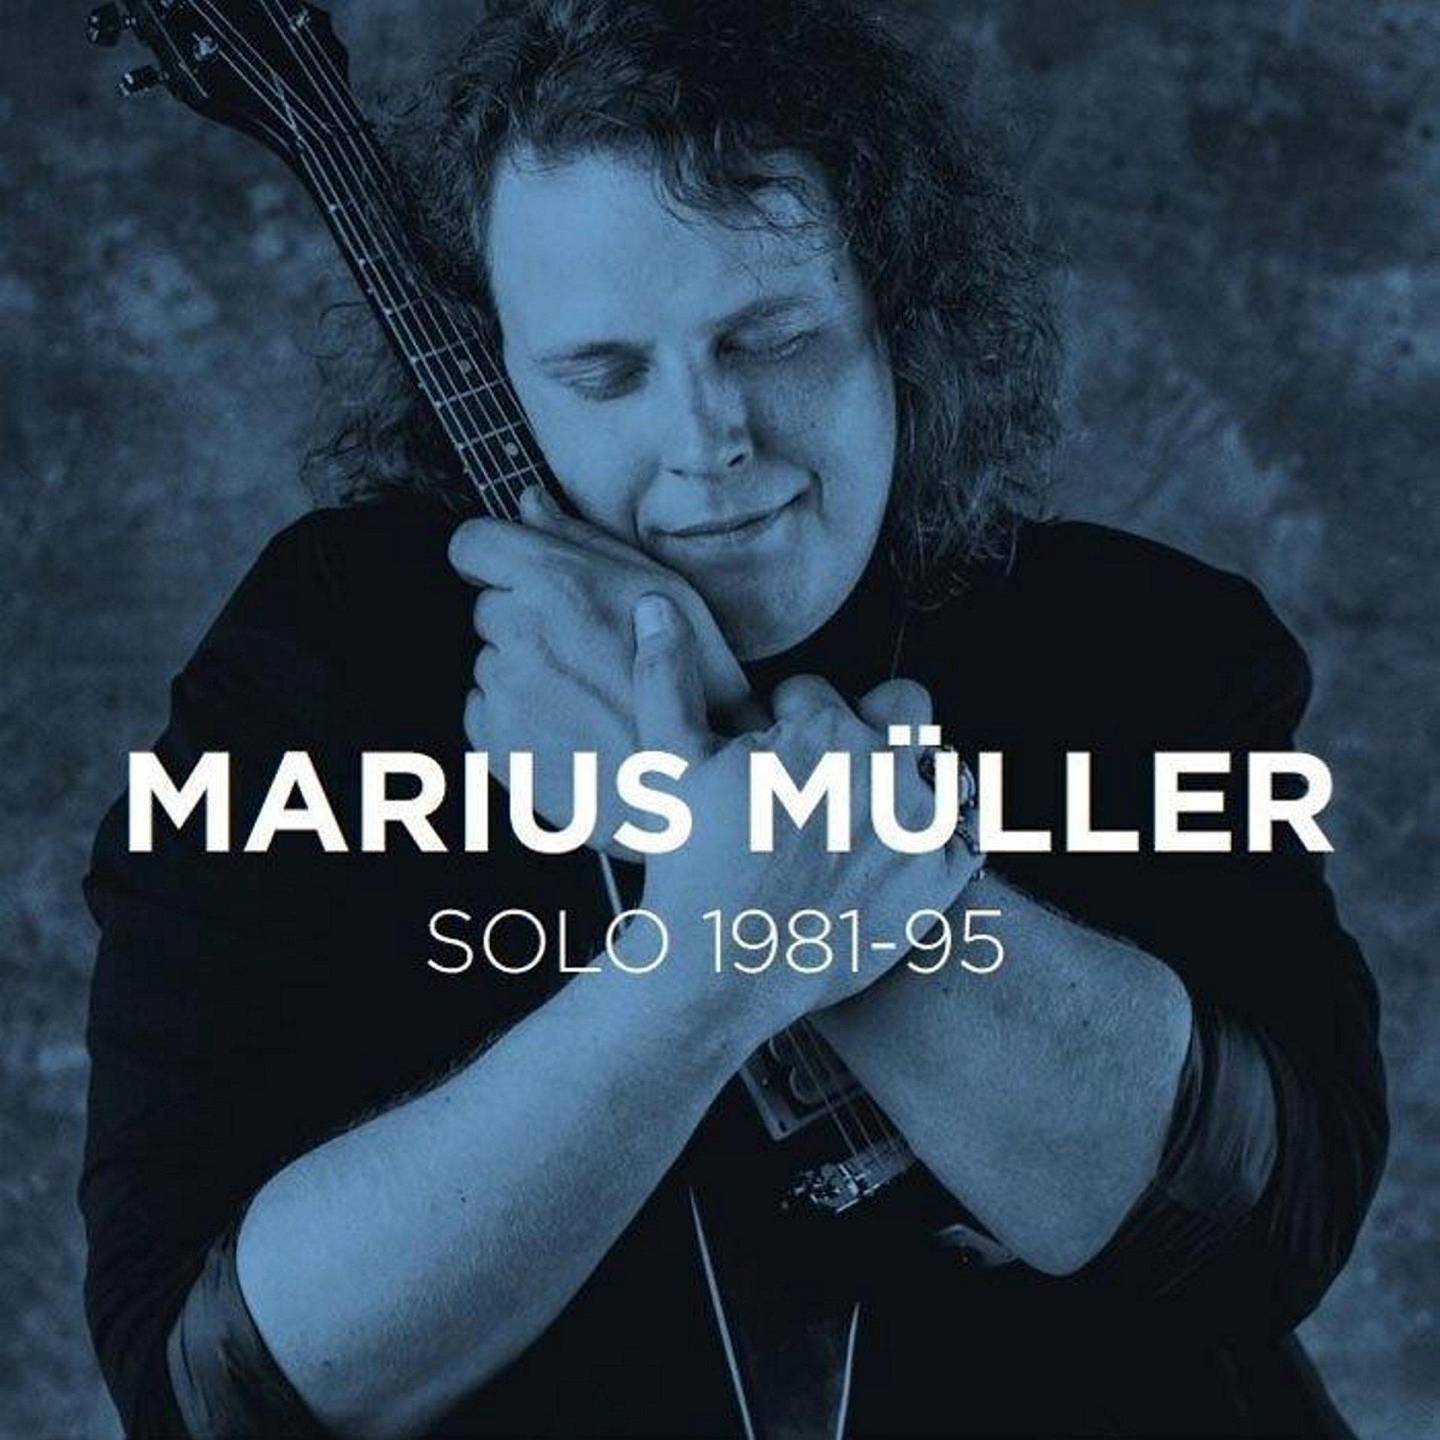 Marius Müller,KUL Anm Musikk B:«Solo 1981- 1985»
KUL Anm Musikk C:C + C